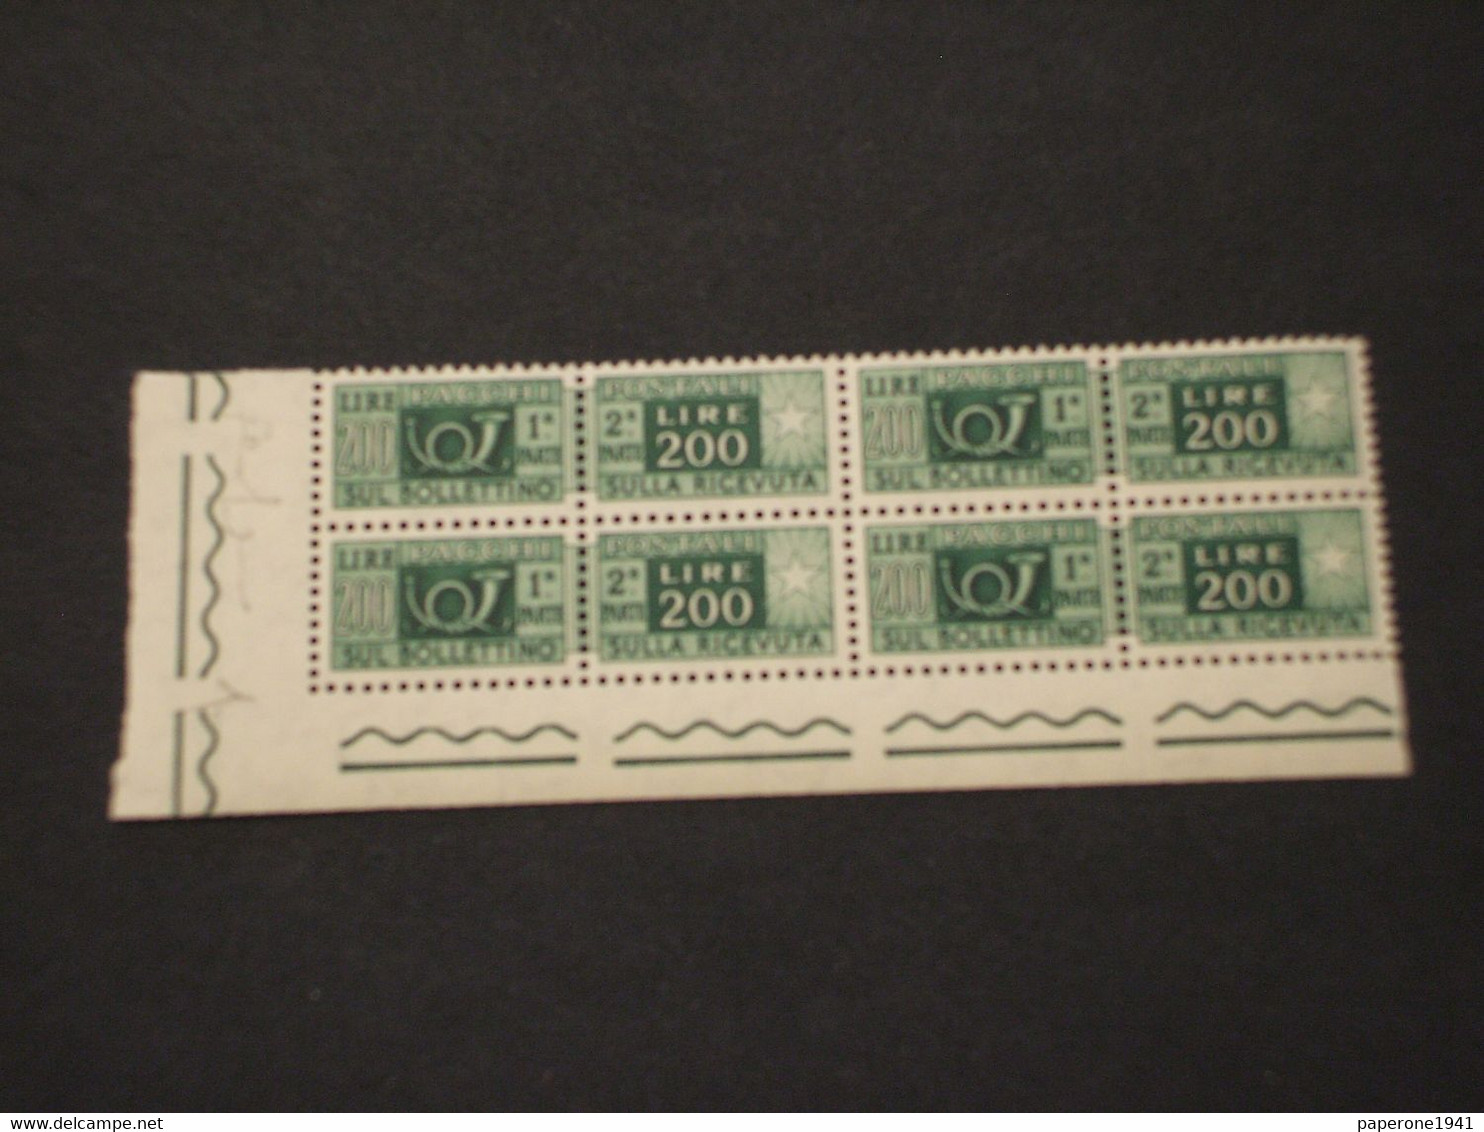 ITALIA  REPUBBLICA - PACCHI POSTALI - 1955 CORNO L. 200, Stelle 4a, In Quartina - NUOVO(++) - Postal Parcels